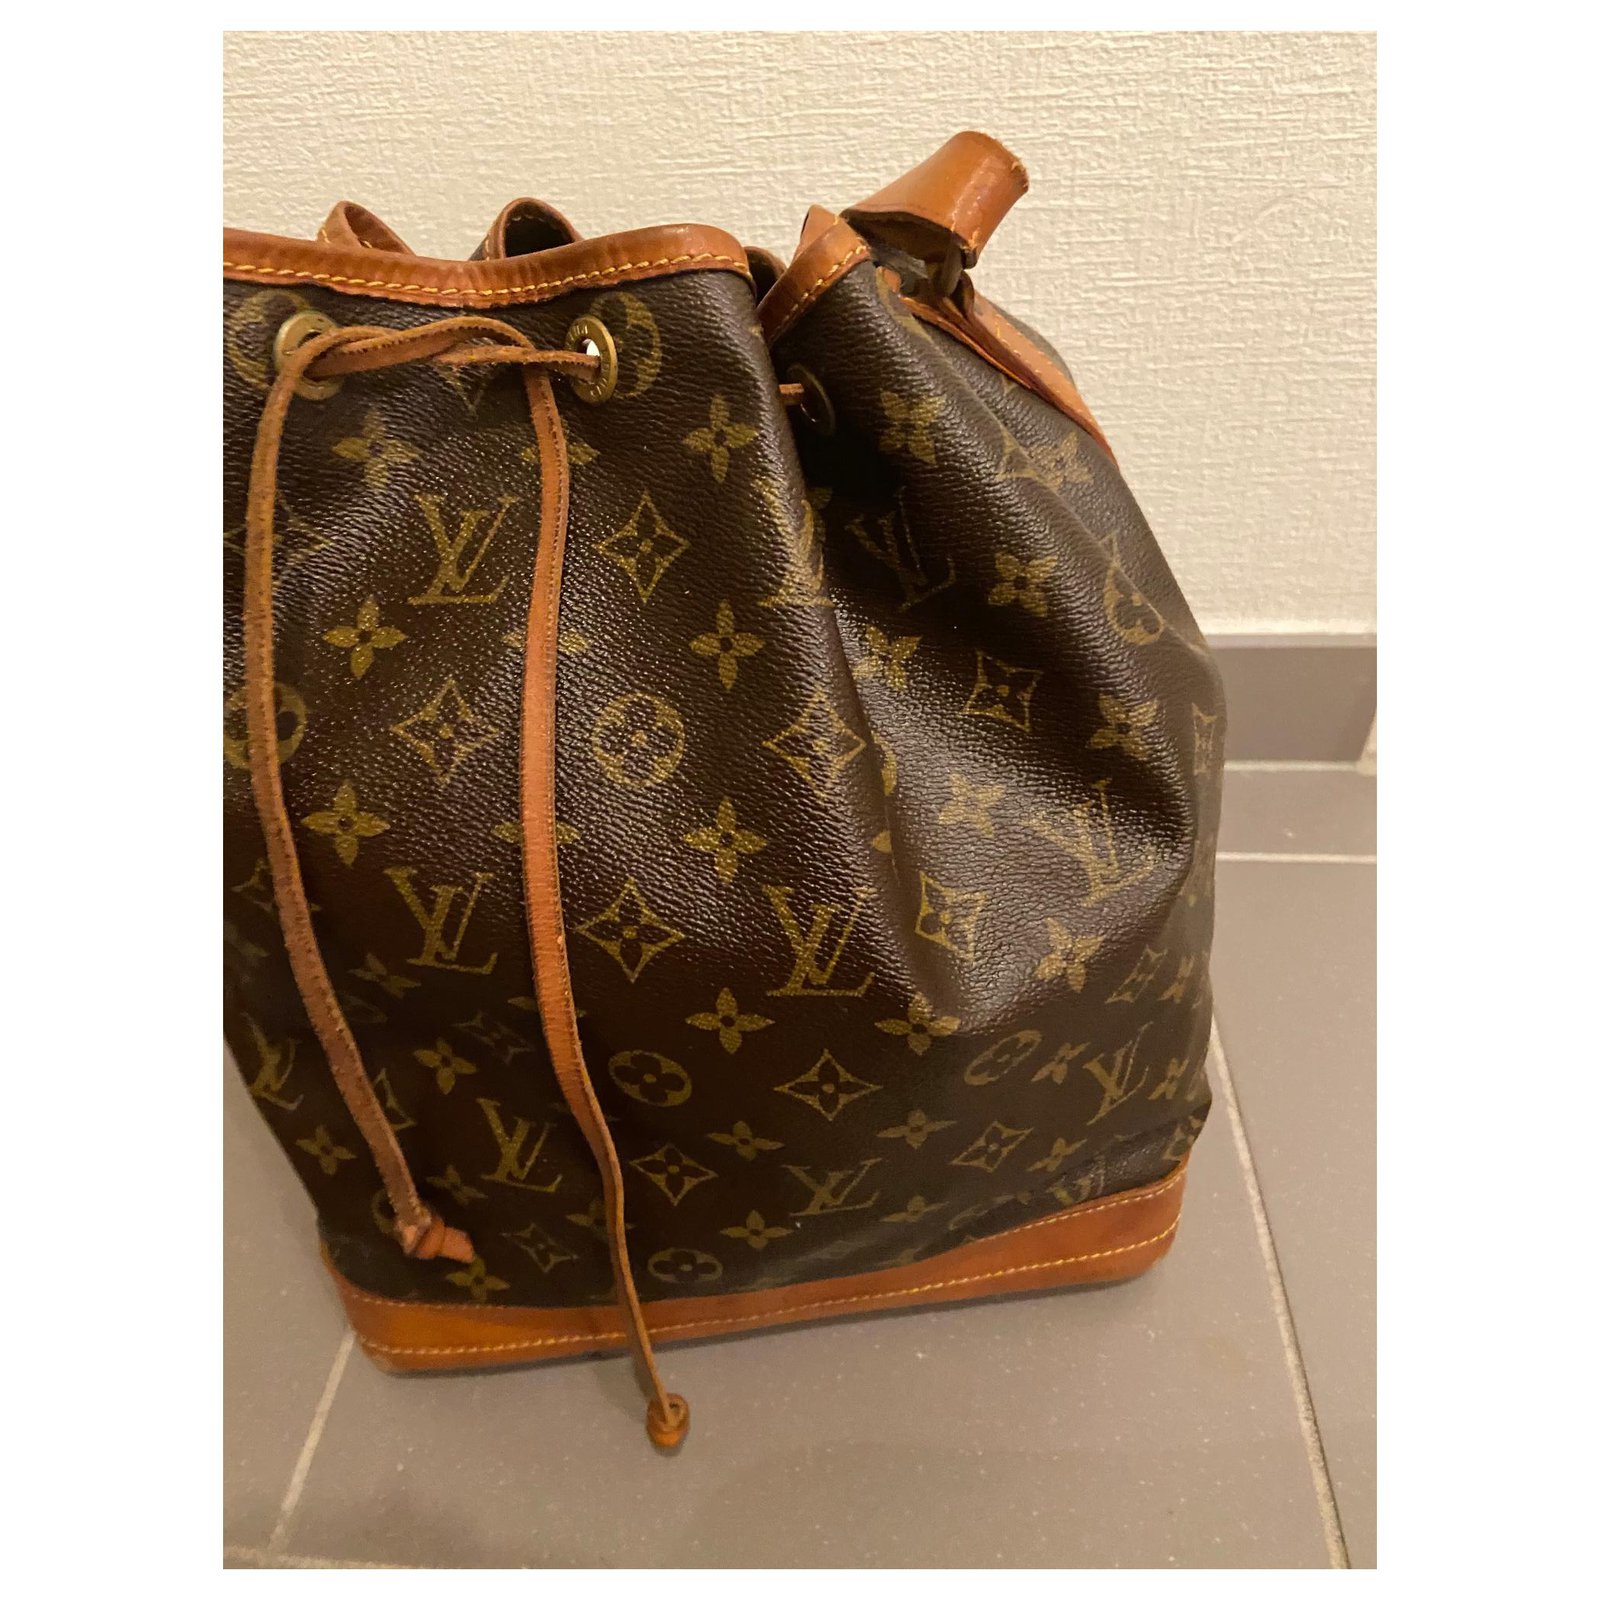 Sac bourse en cuir marron foncé Louis Vuitton, €845